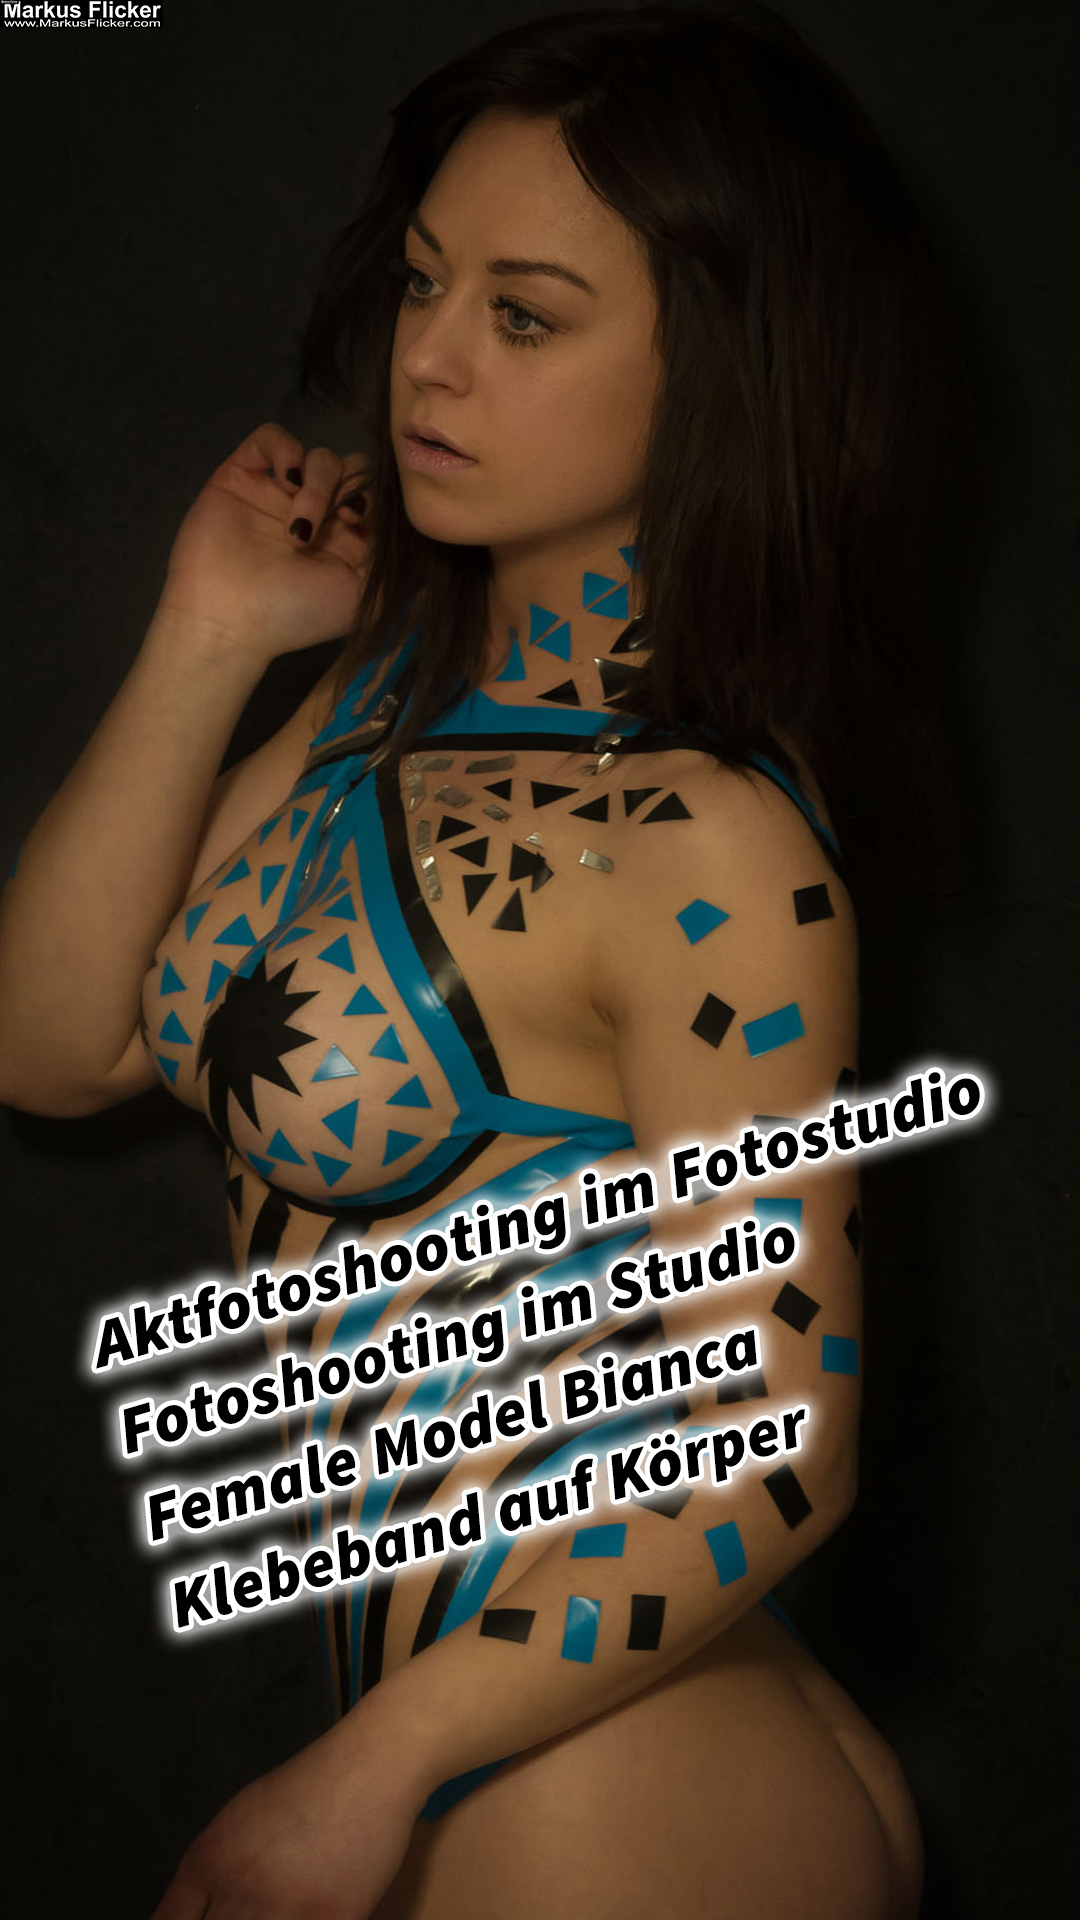 Aktfotoshooting im Fotostudio Fotoshooting im Studio Female Model Bianca Klebeband auf Körper #TapeTheModelPhotography